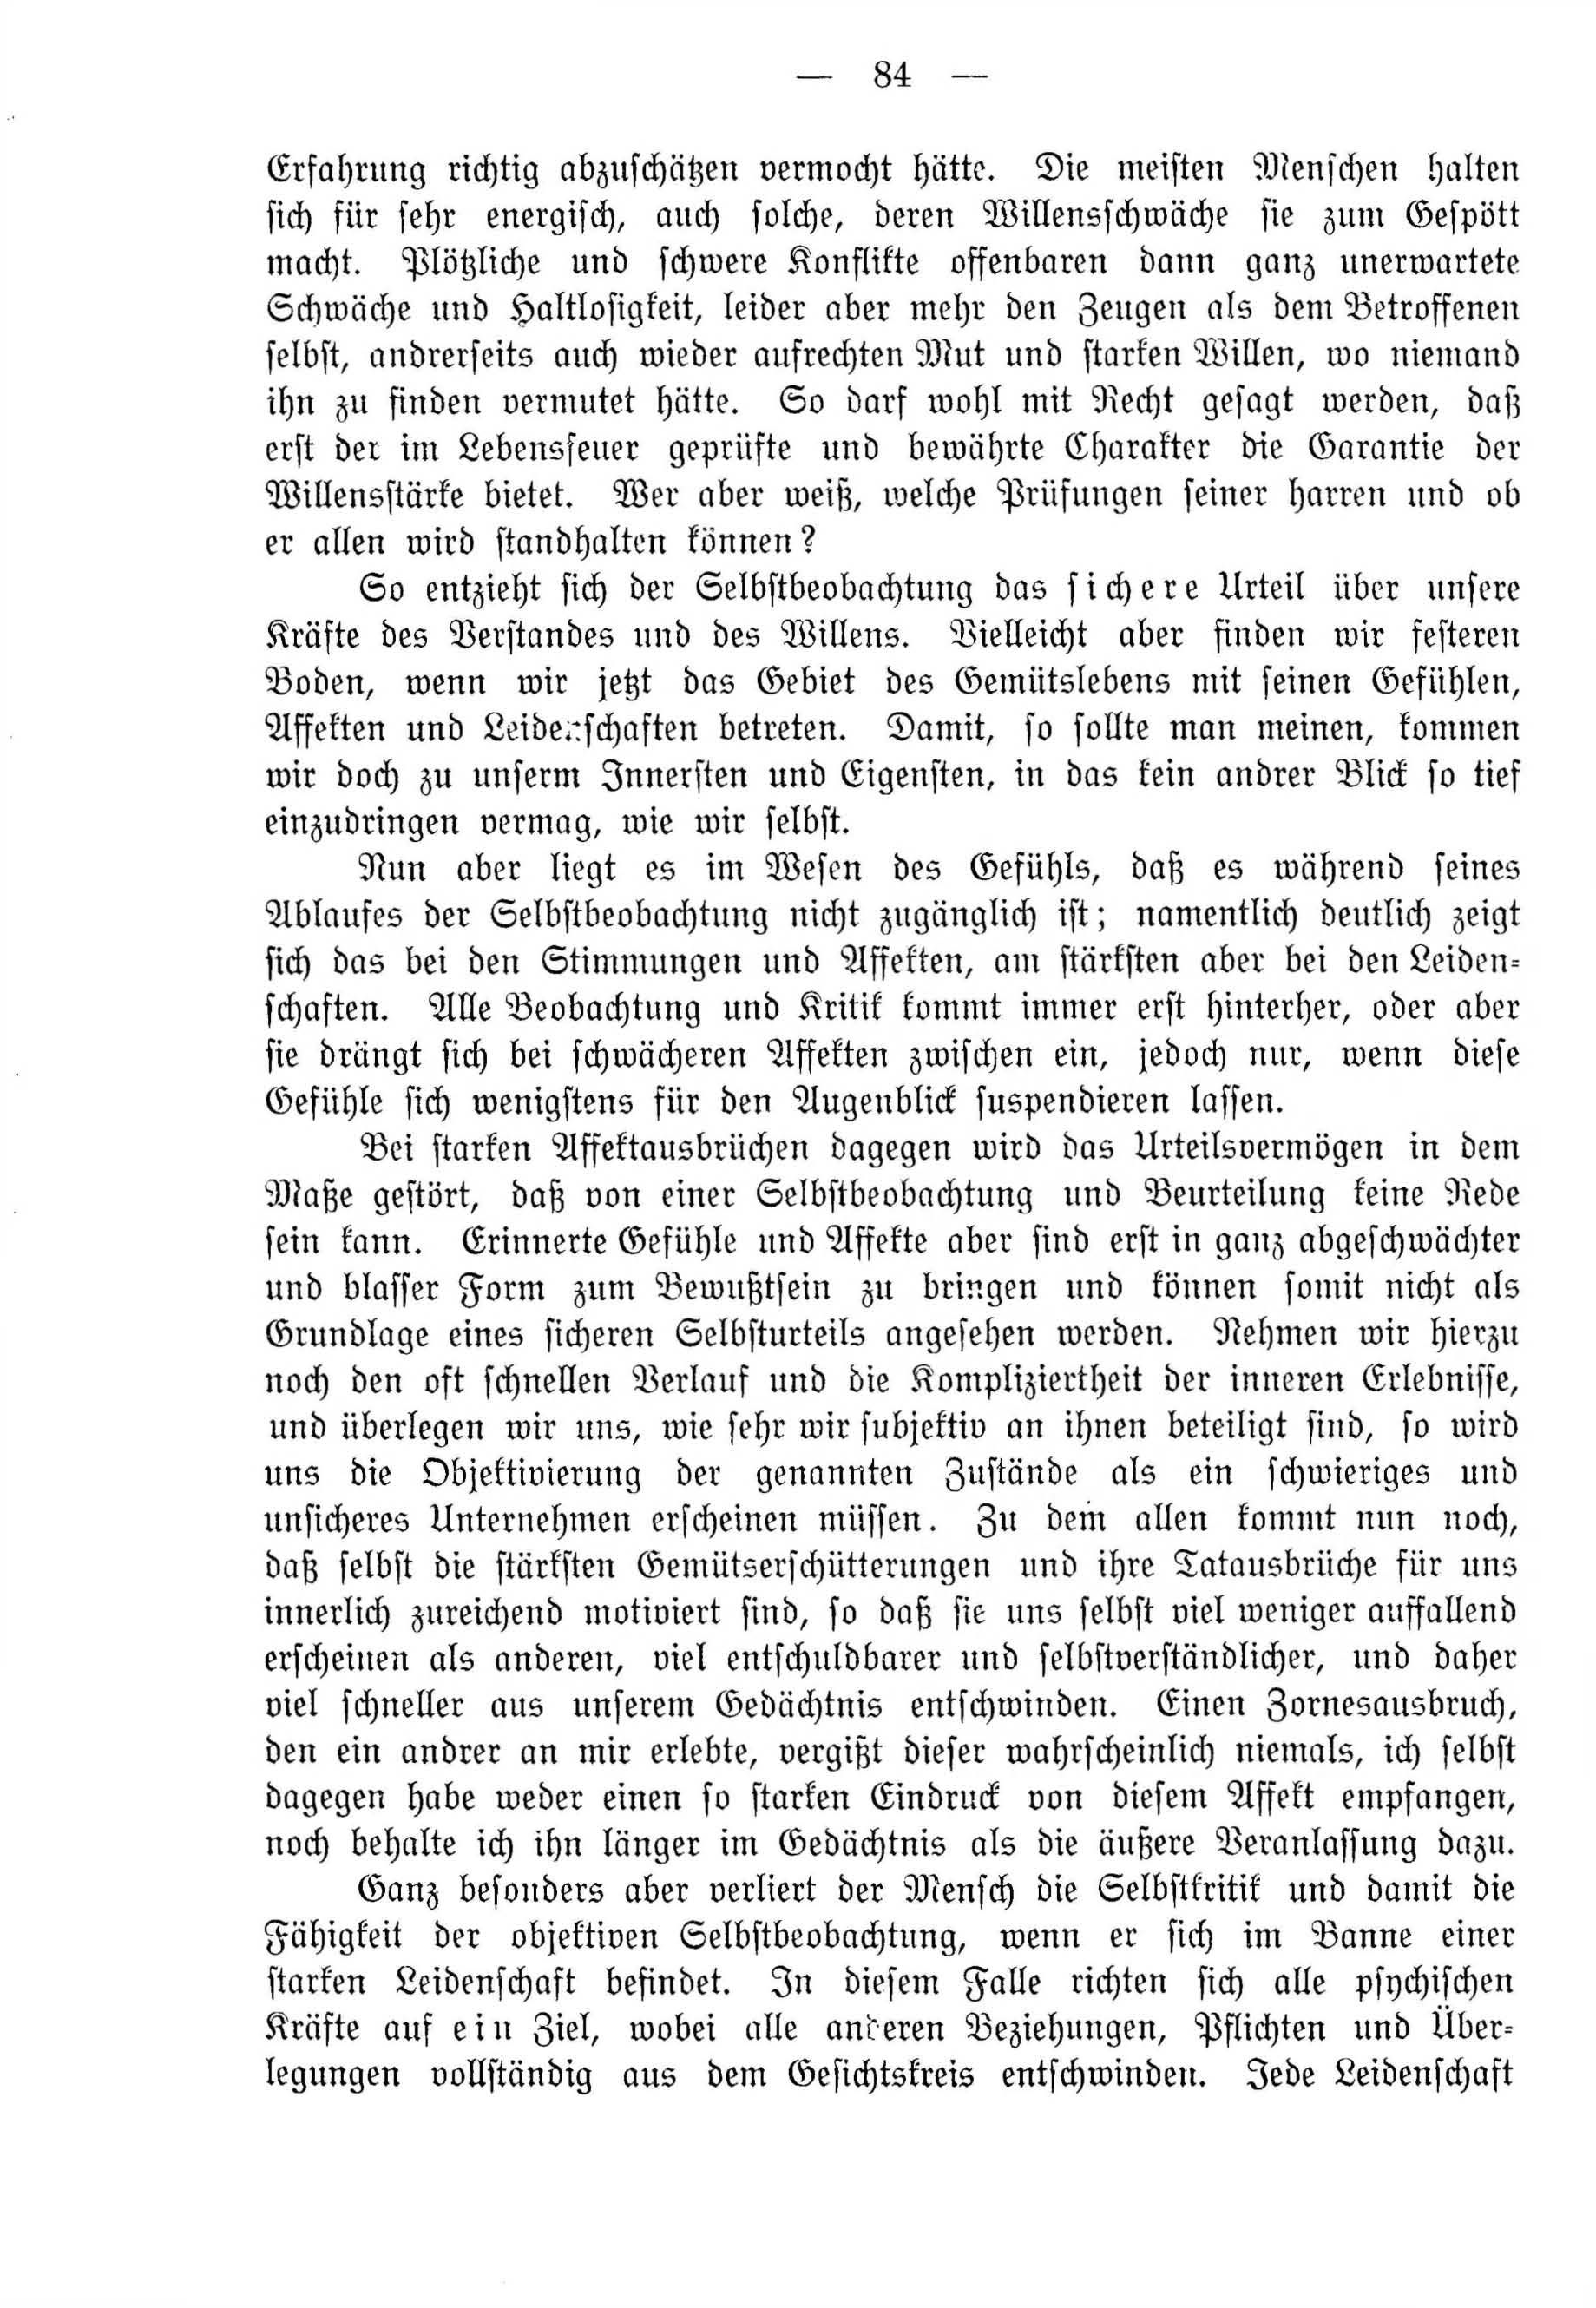 Deutsche Monatsschrift für Russland [4] (1915) | 84. (84) Основной текст